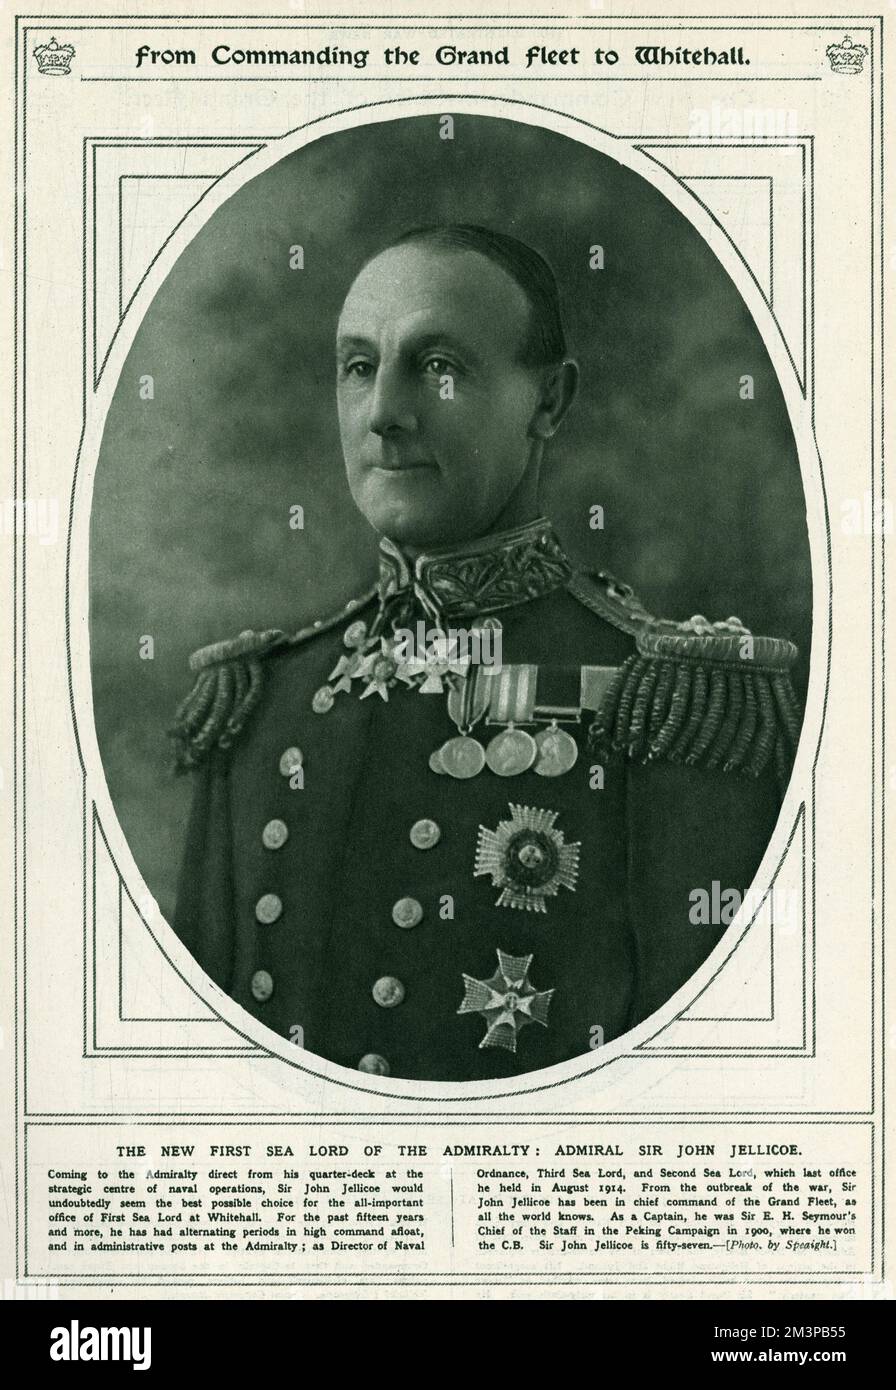 Admiral Sir John Rushworth Jellicoe, 1. Earl Jellicoe (1859-1935), Oberbefehlshaber der britischen Flotten im Jahr 1914. Obwohl Jellicoe während der Schlacht von Jütland dafür kritisiert wurde, dass es nicht gelungen ist, die deutsche Marine kategorisch zu besiegen, gelang es Jellicoe, die deutsche Bedrohung für den Rest des Krieges zu neutralisieren. Er wurde 1916 zum 1.. Seelord der Admiralität, wurde 1919 zum Admiral der Flotte befördert und wurde 1920 Gouverneur Neuseelands. Er wurde 1918 in Anerkennung seiner Dienste während des Ersten Weltkriegs 1916 von Viscount Jellicoe aus Scapa gegründet Stockfoto